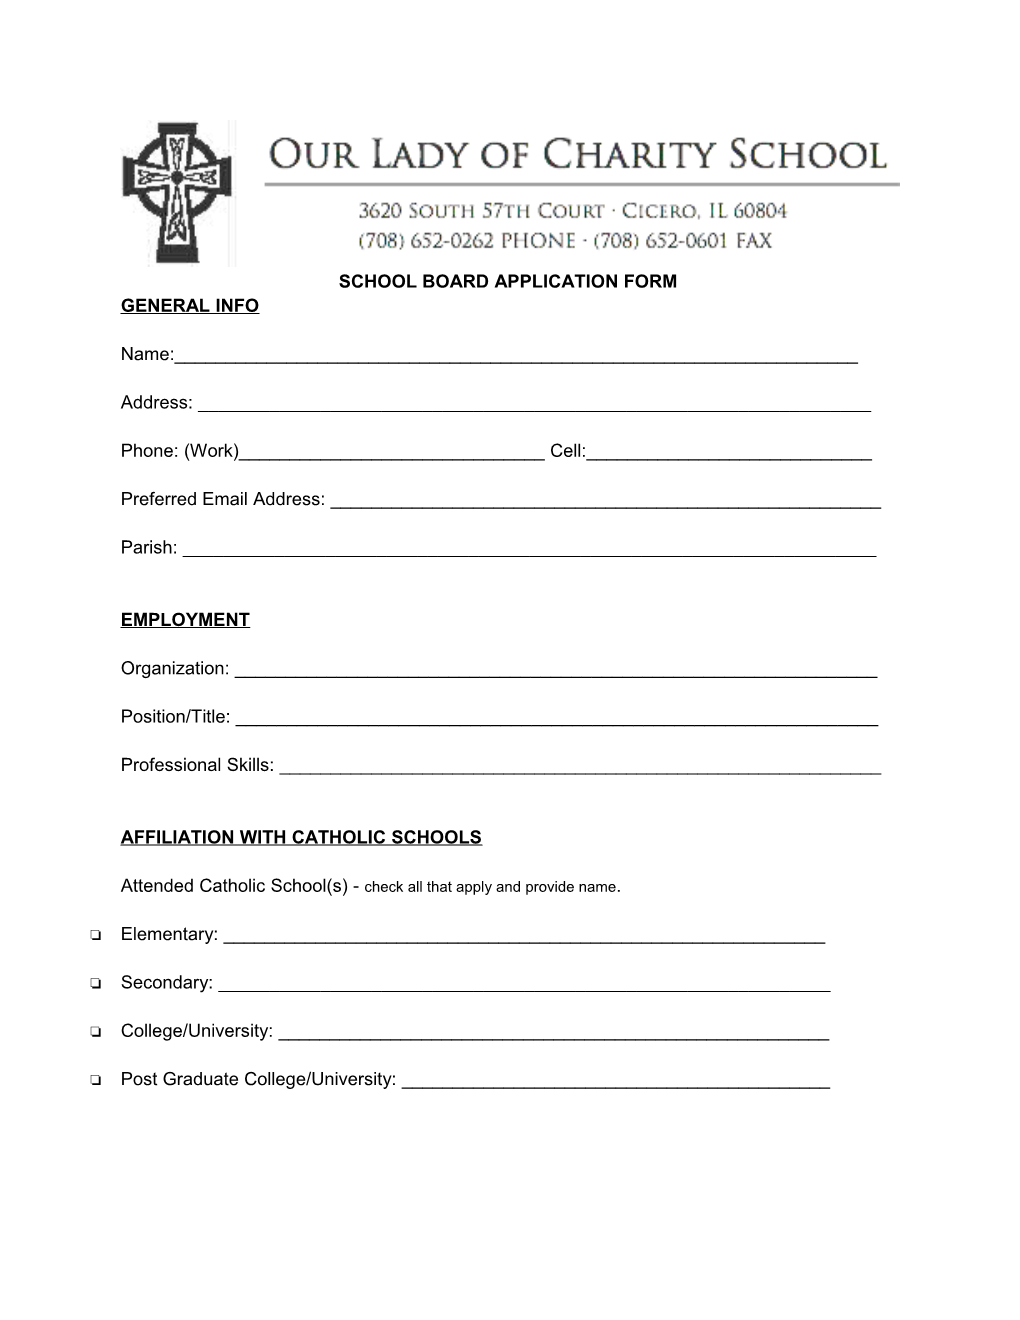 School Board Application Form s1